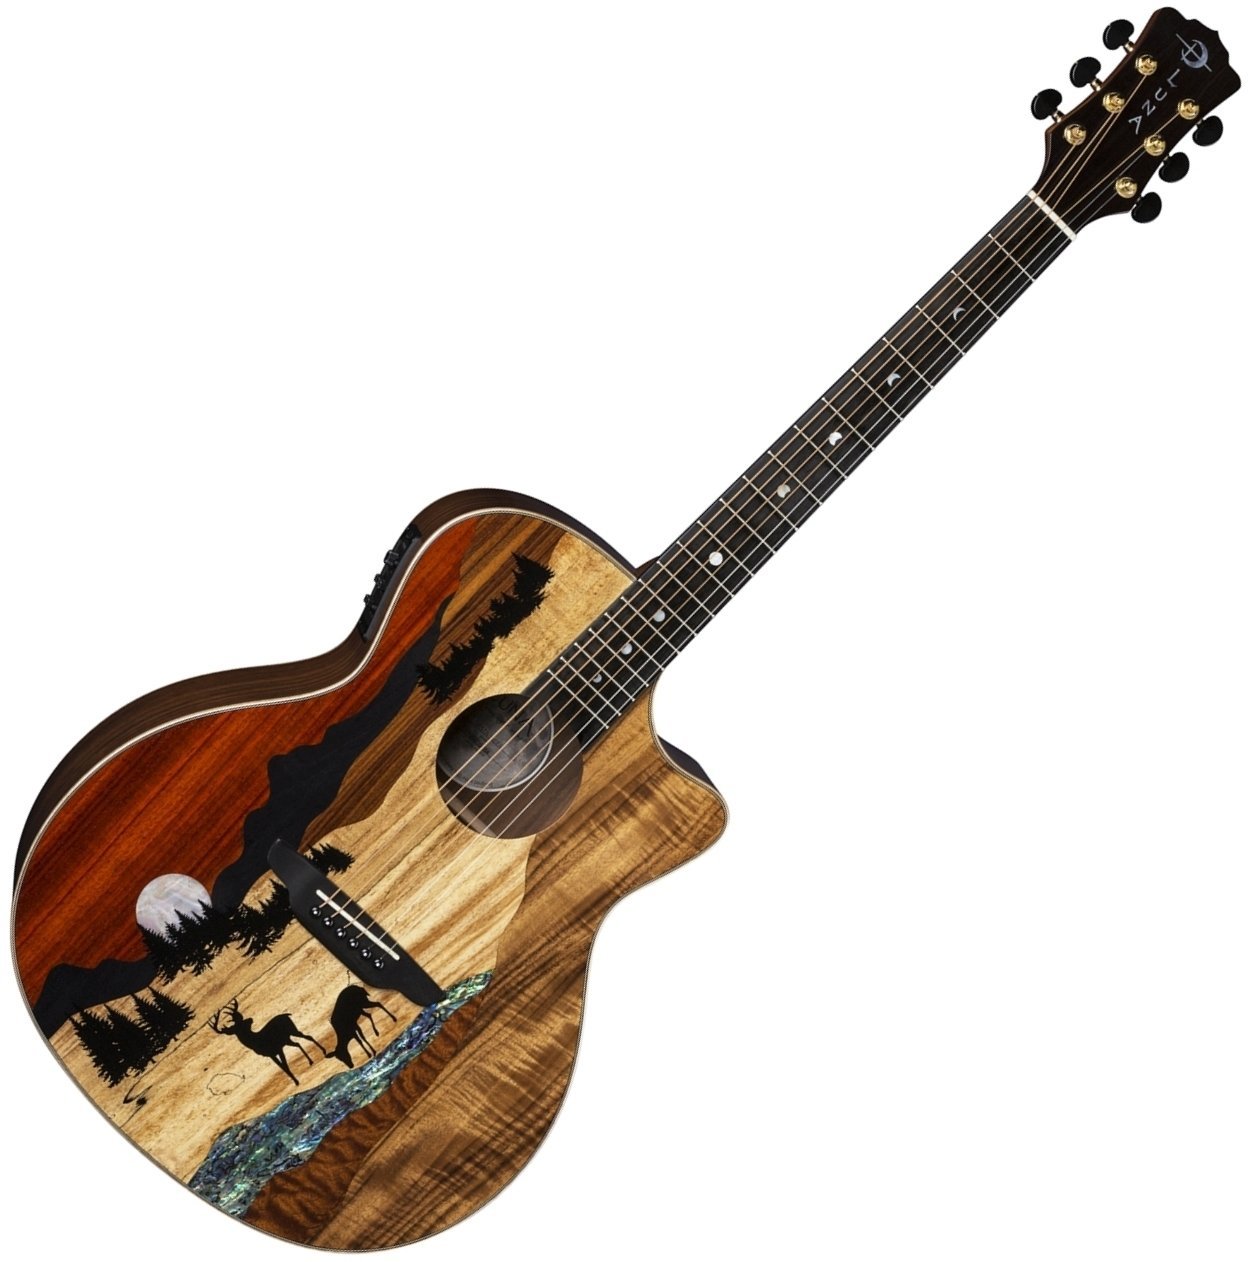 Jumbo elektro-akoestische gitaar Luna Vista Deer Tropical Wood Deer motif on exotic marquetry